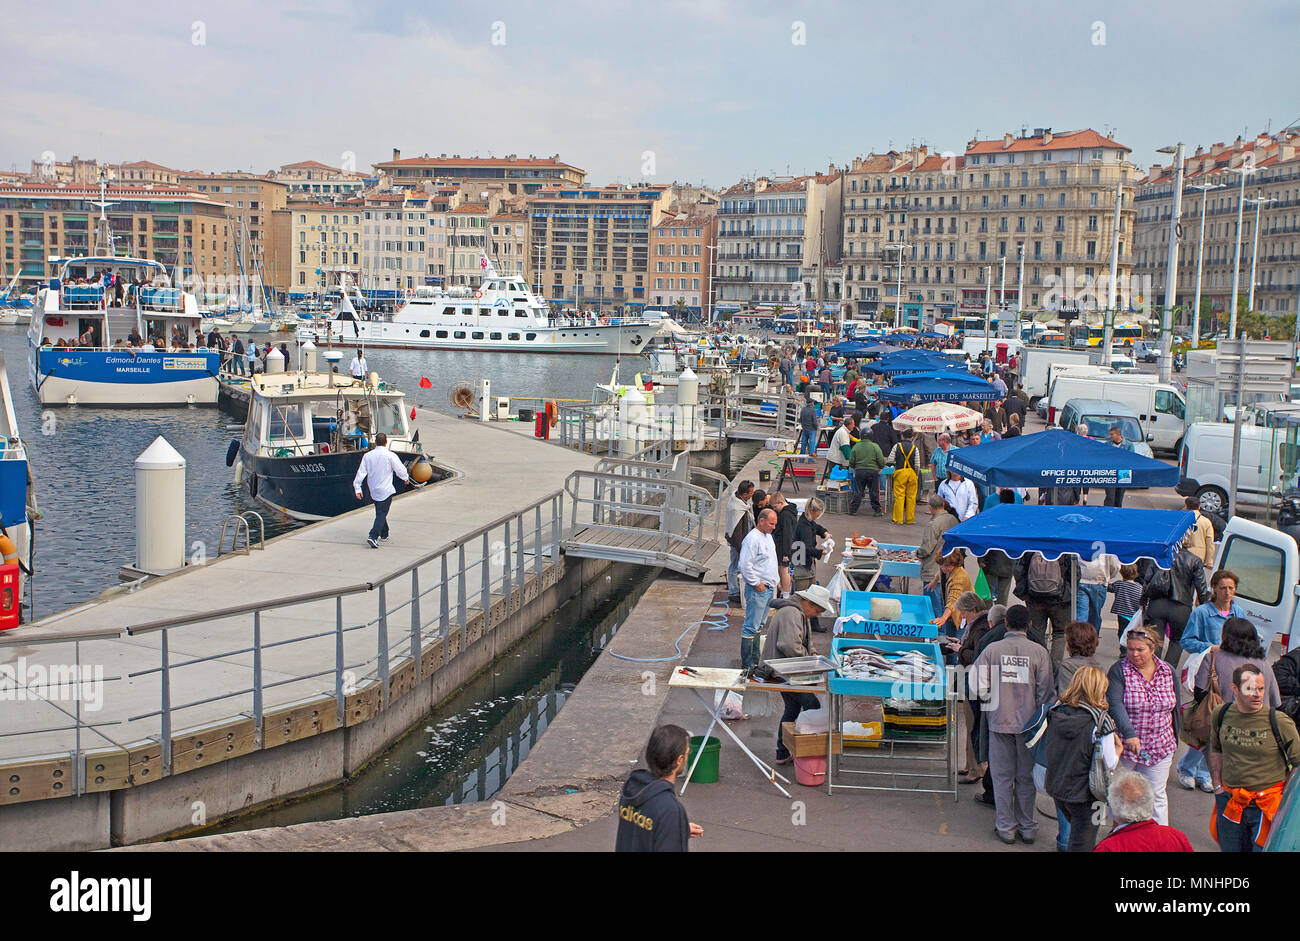 Fish market at old harbour Vieux Port, Marseille, Bouches-du-Rhone, Provence-Alpes-Côte d’Azur, South France, France, Europe Stock Photo